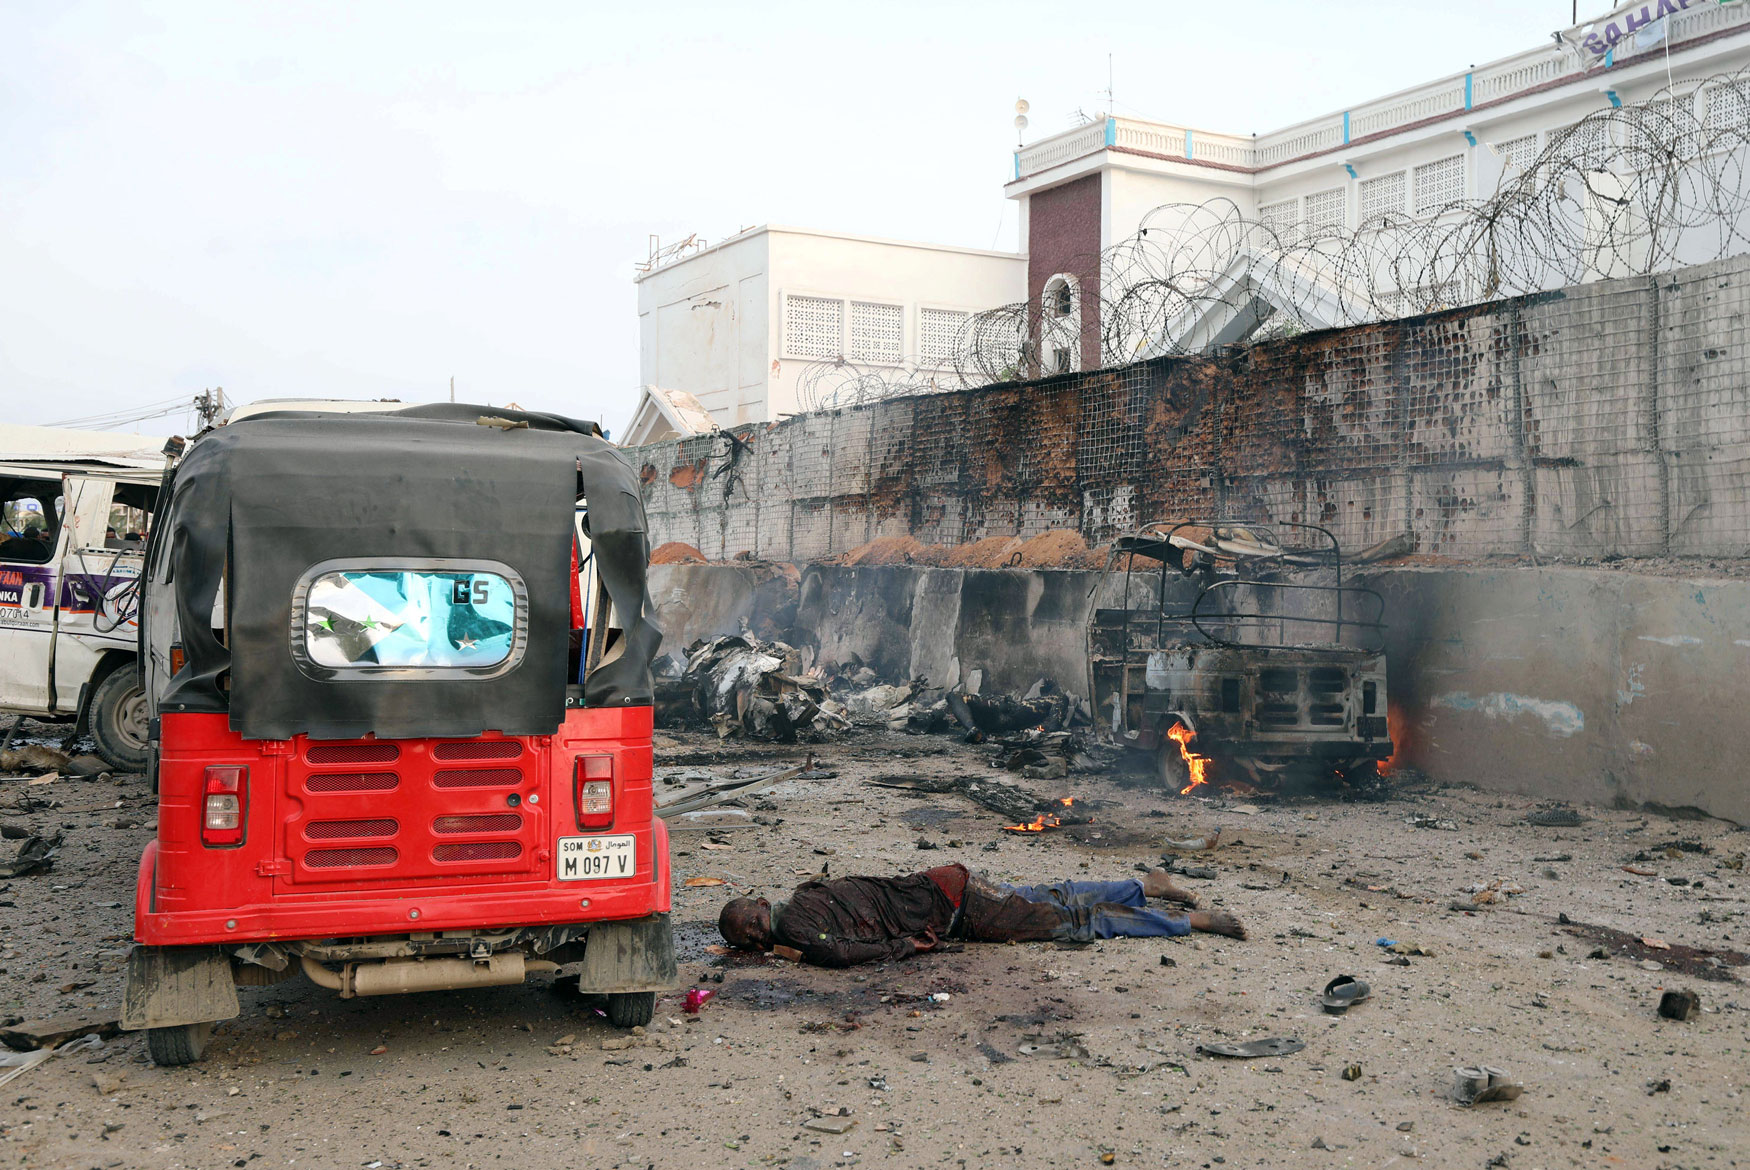 أشلاء وفوضى في كل مكان مع أعنف الاعتداءات الإرهابية بالعاصمة الصومالية